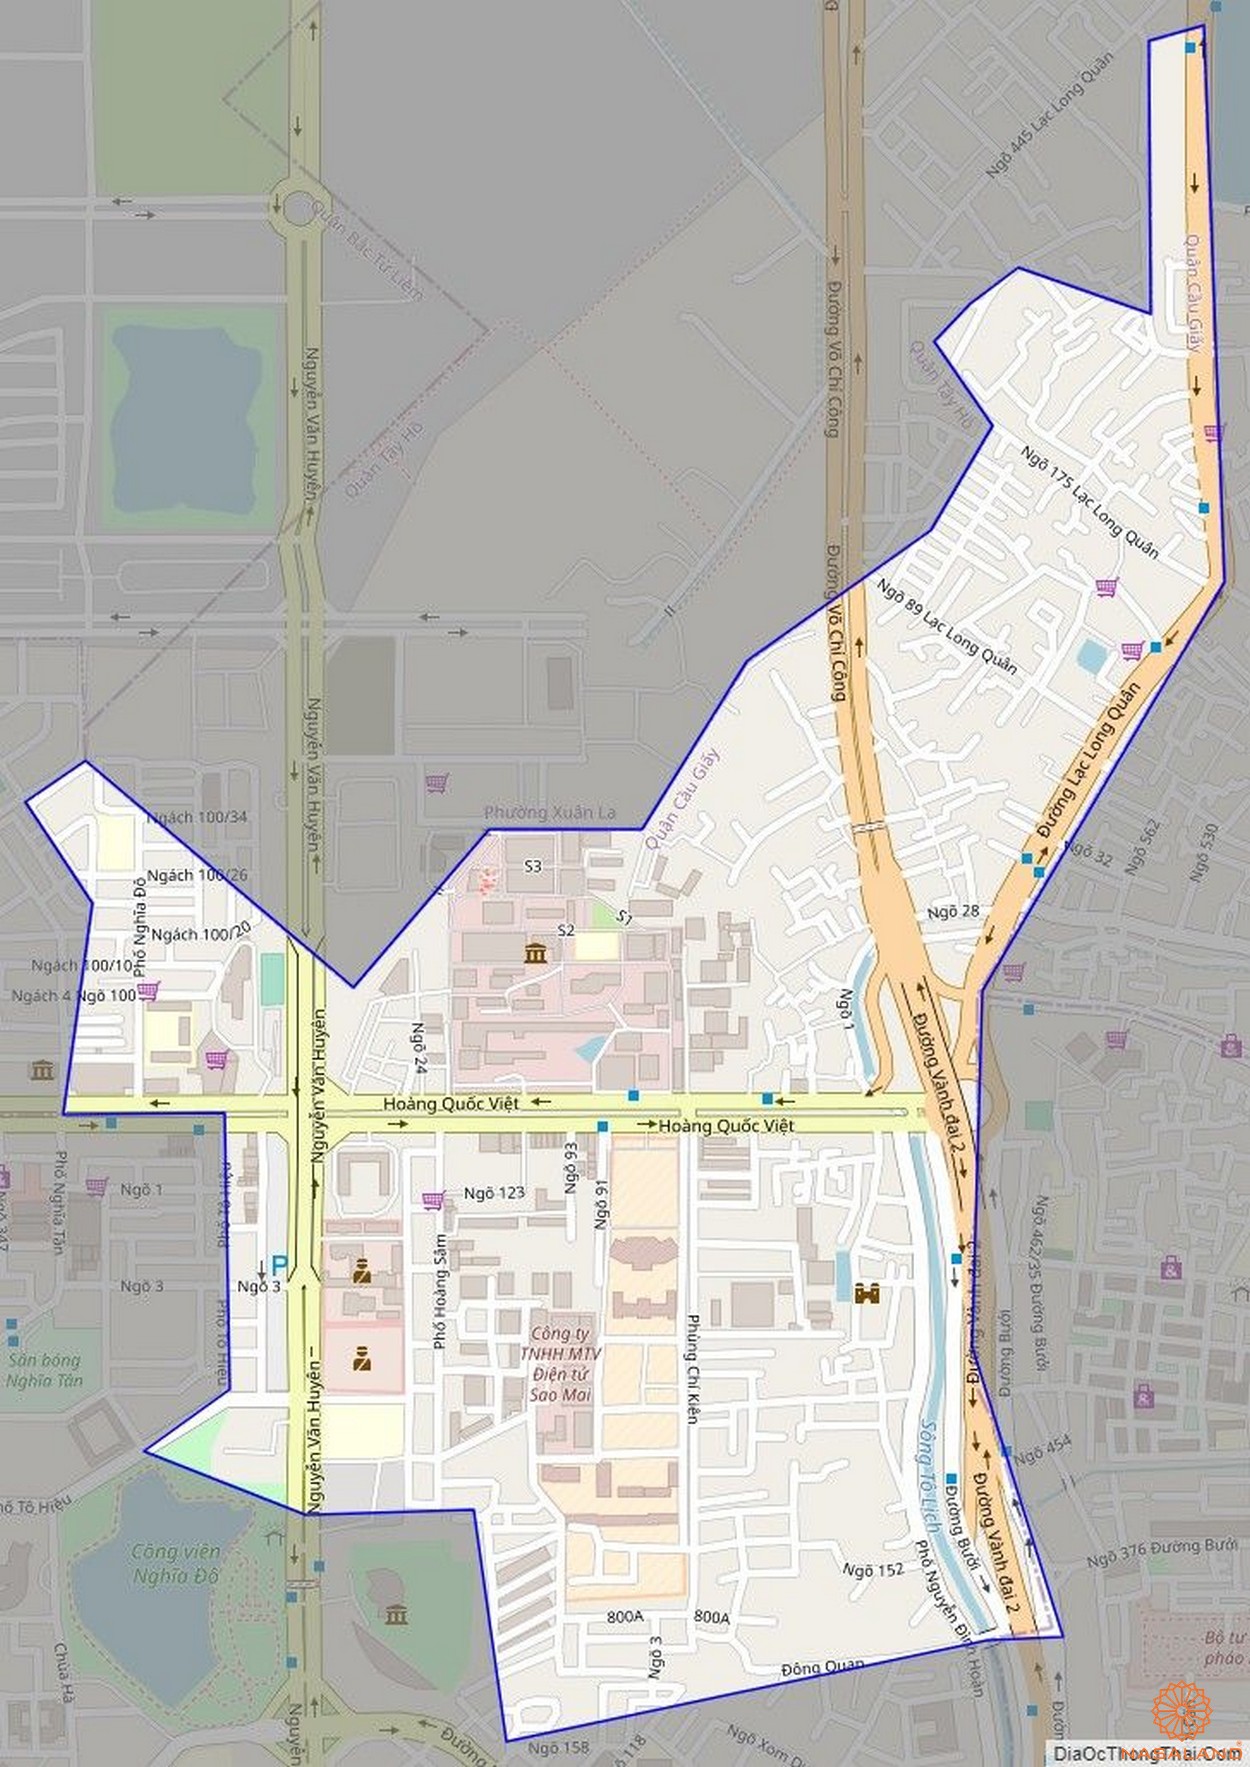 Quy hoạch sử dụng đất Phường Nghĩa Đô Quận Cầu Giấy thể hiện trên bản đồ quy hoạch phân khu tỷ lệ 1/2000 của Thành phố Hà Nội